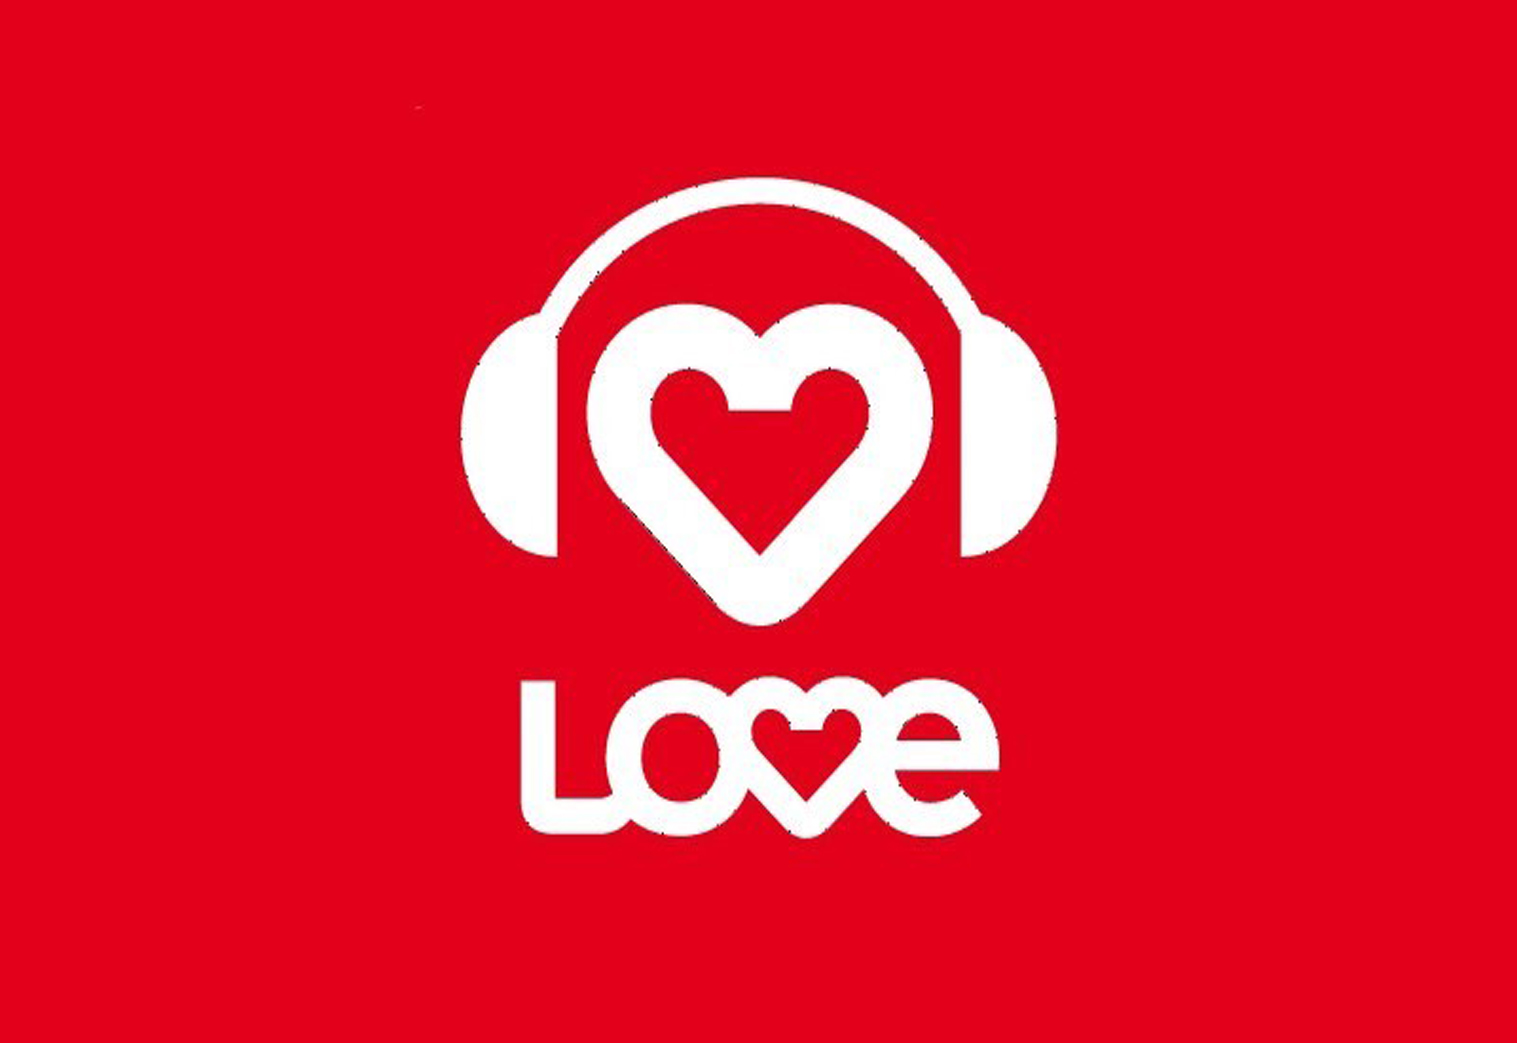 Лав радио фм. Love Radio. Love радио логотип. Лав радио картинки. Лав радио волна.